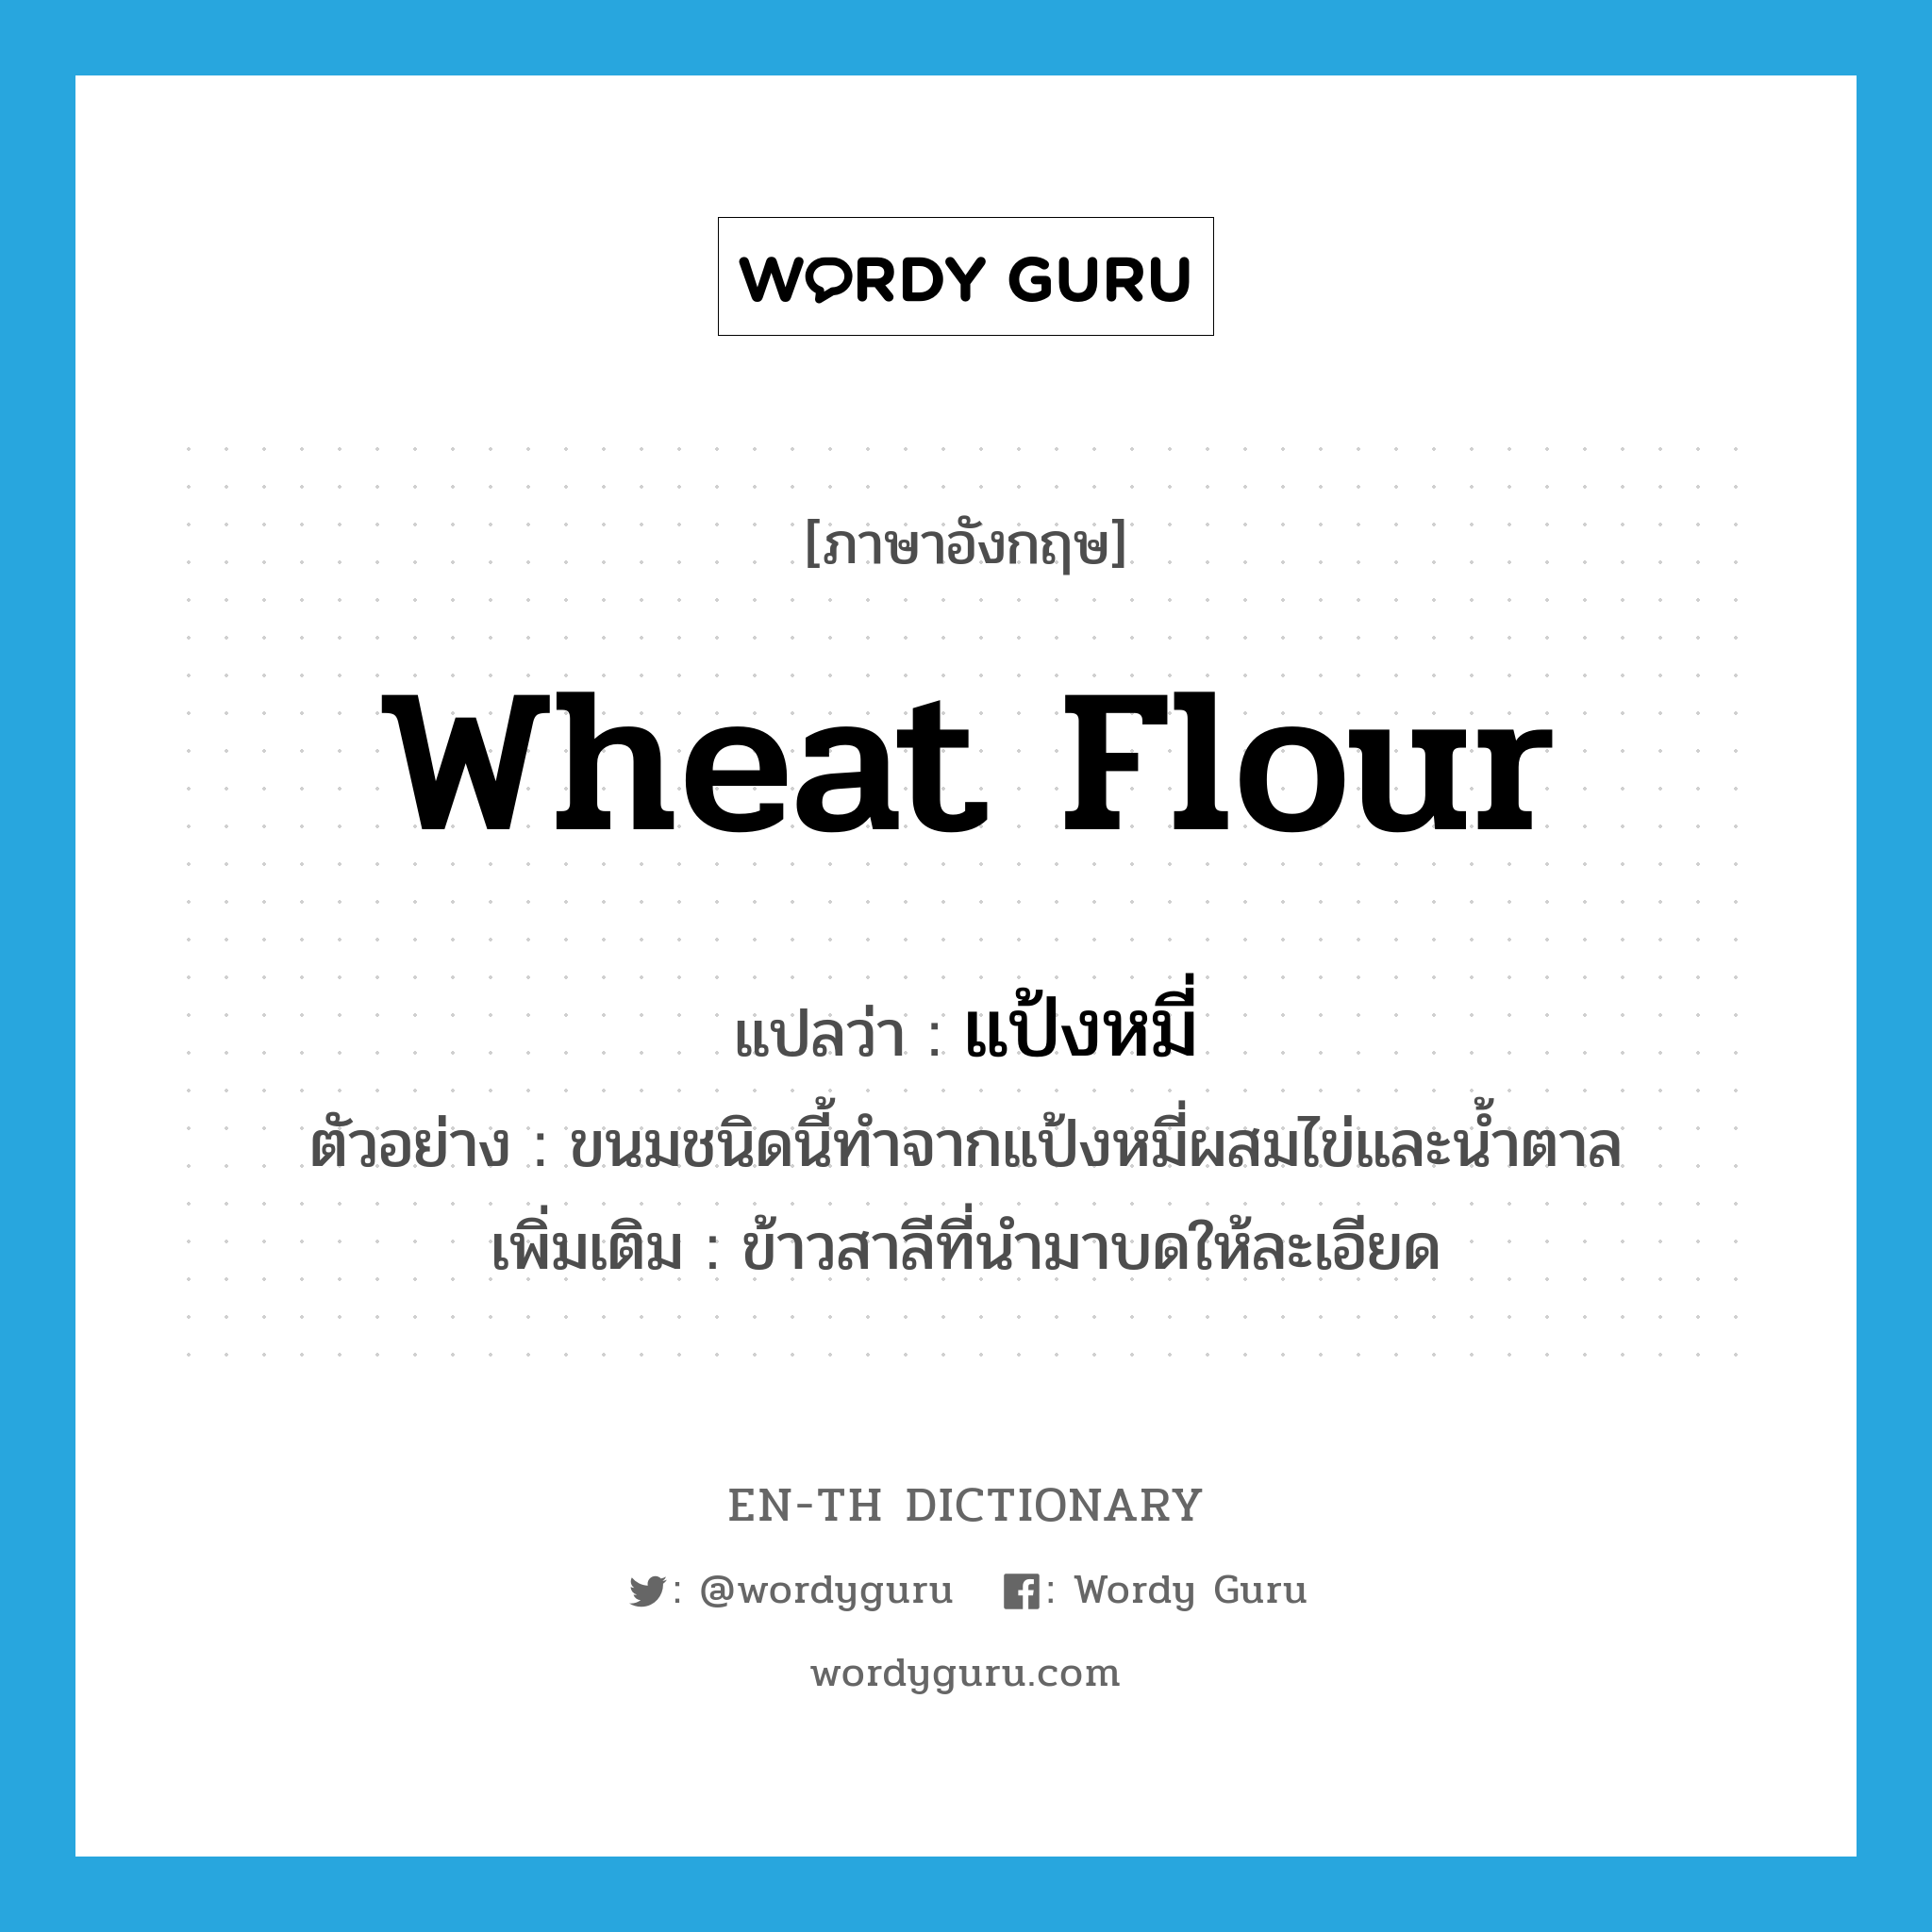 wheat flour แปลว่า?, คำศัพท์ภาษาอังกฤษ wheat flour แปลว่า แป้งหมี่ ประเภท N ตัวอย่าง ขนมชนิดนี้ทำจากแป้งหมี่ผสมไข่และน้ำตาล เพิ่มเติม ข้าวสาลีที่นำมาบดให้ละเอียด หมวด N